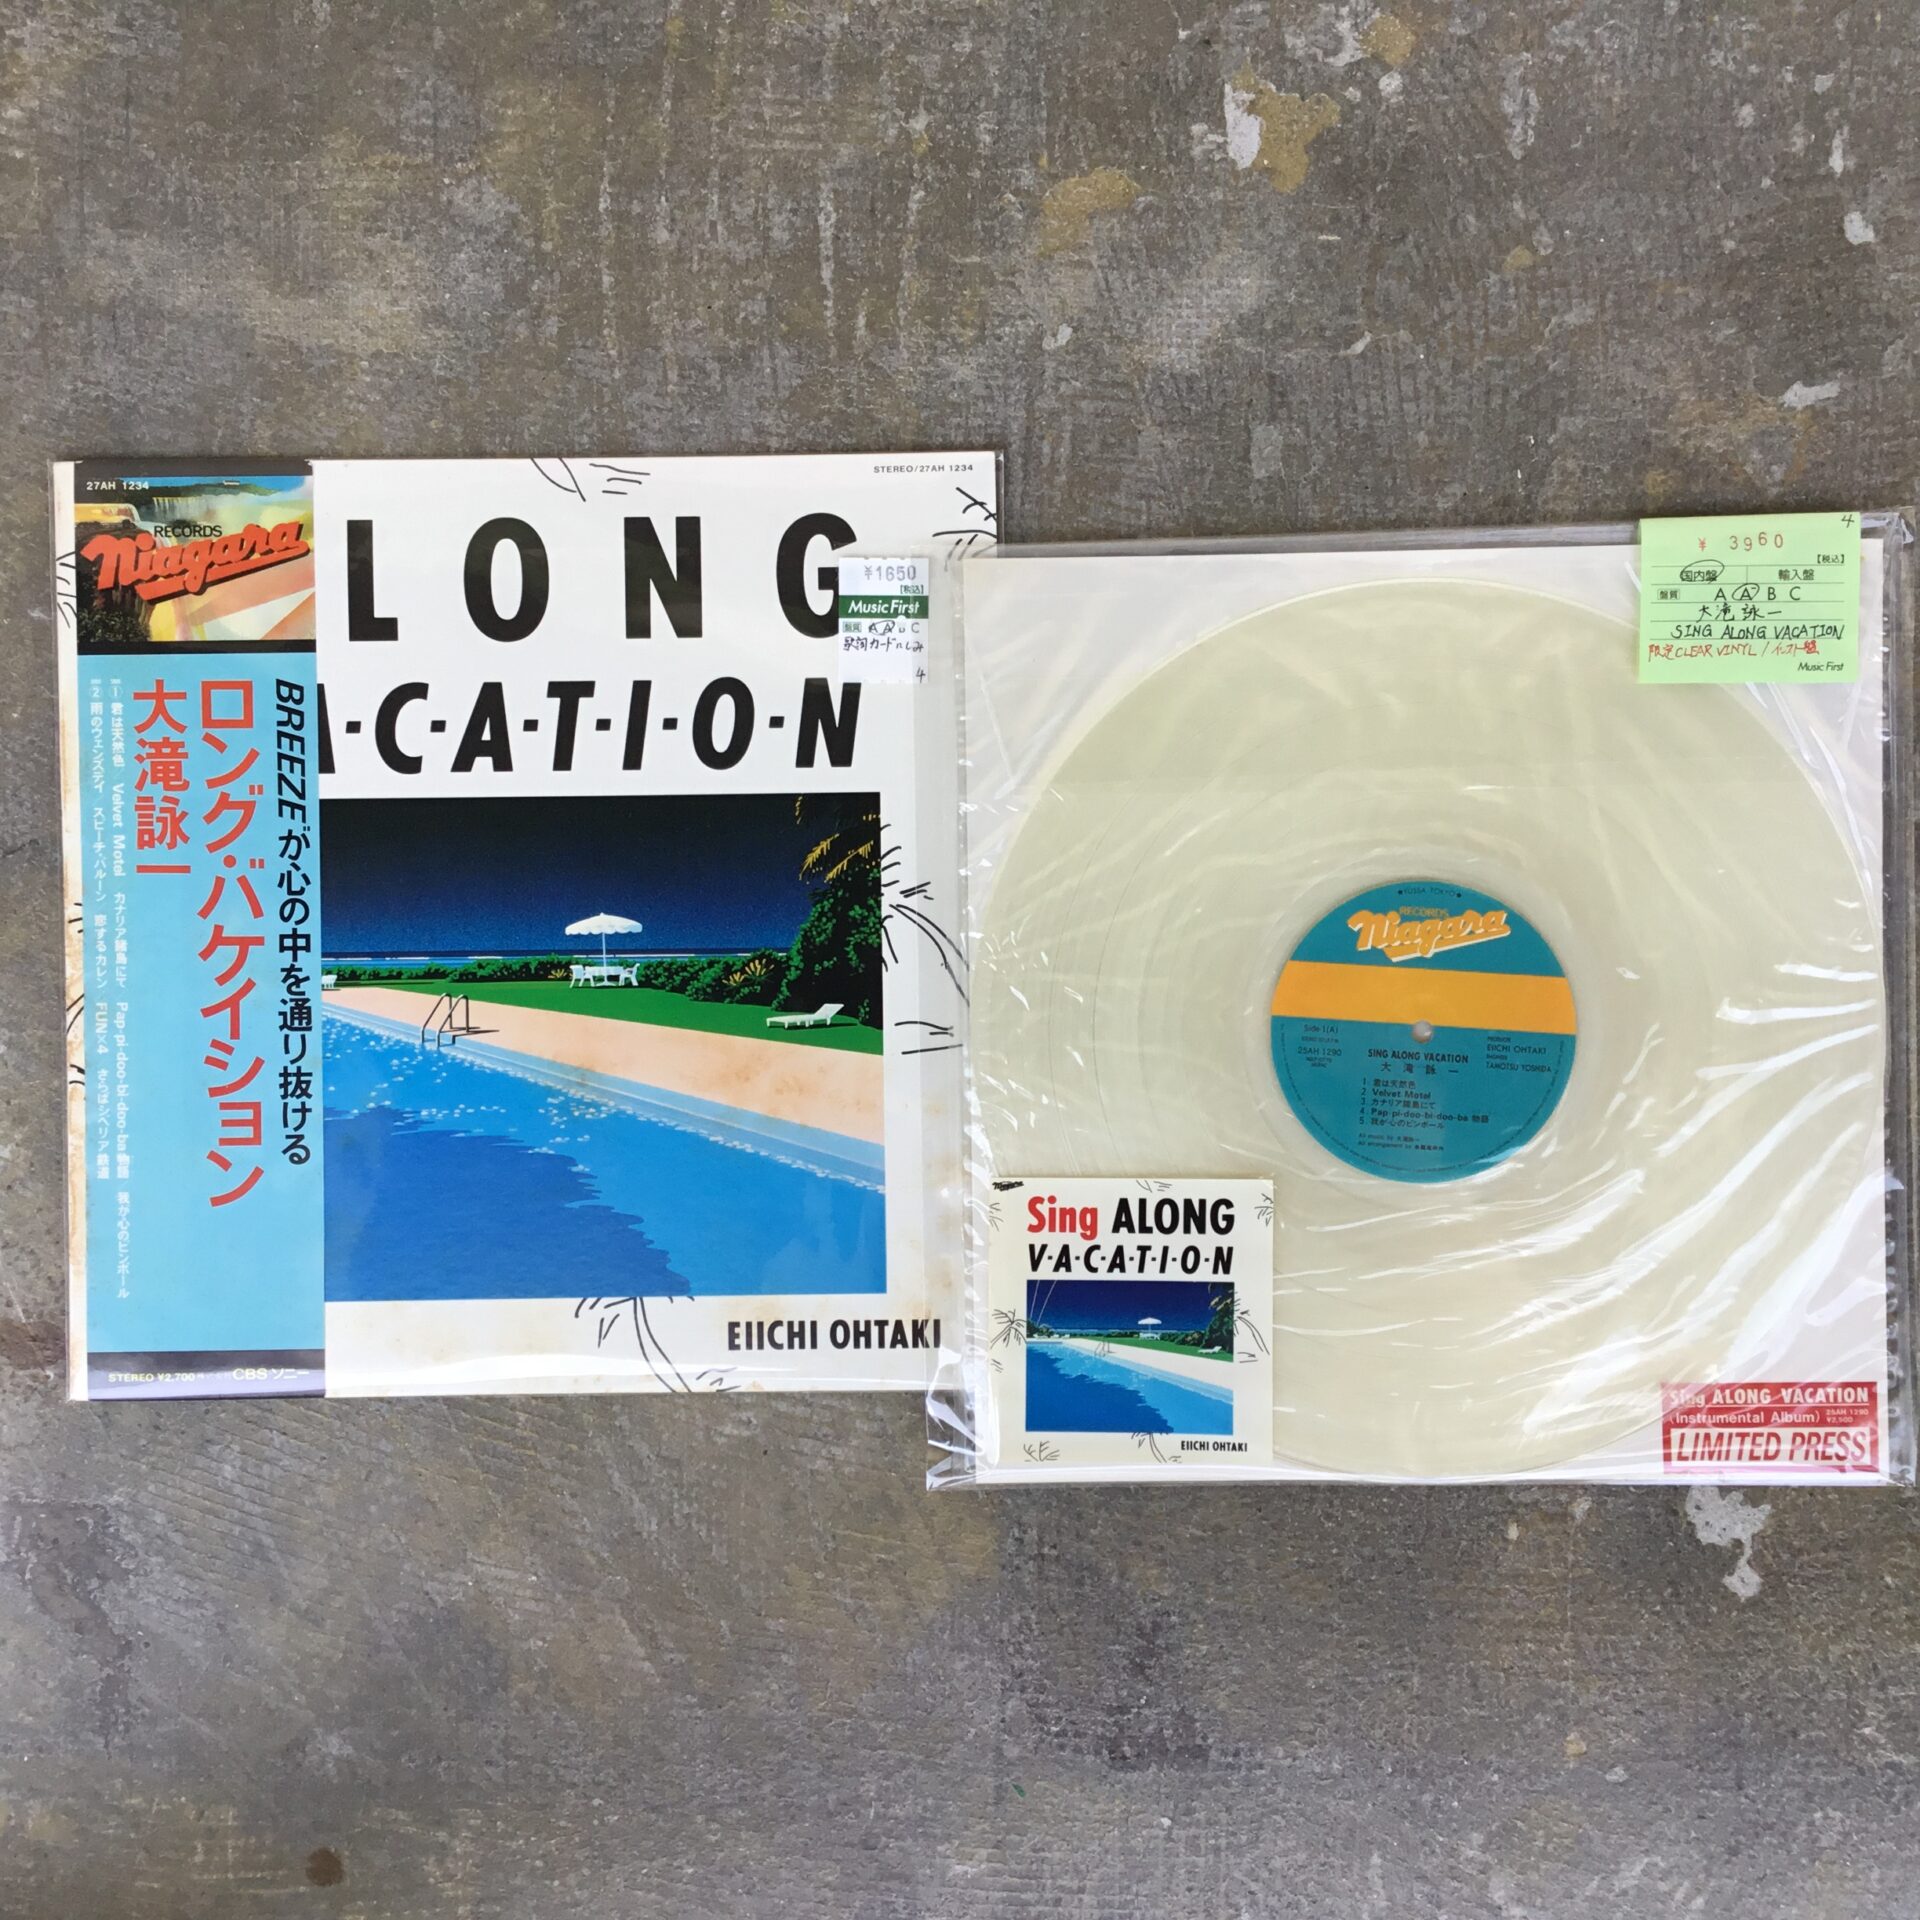 【新入荷情報】 大瀧詠一の「ロング・バケイション」関連LPが2枚入荷しました。